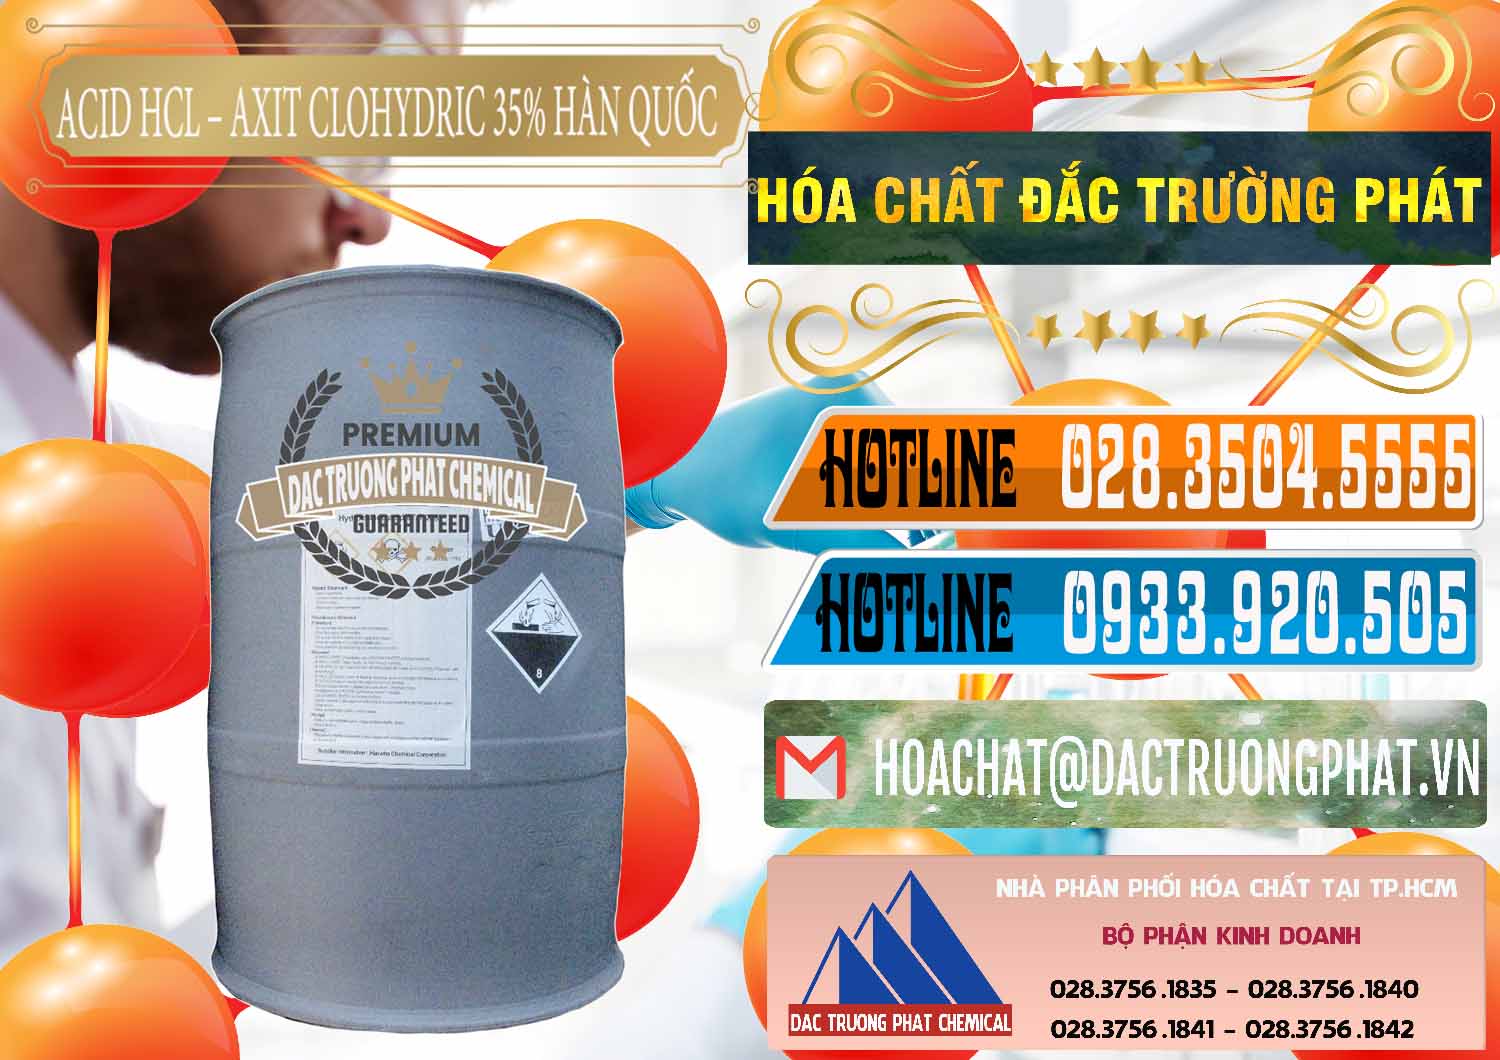 Chuyên cung ứng _ bán Acid HCL - Axit Cohidric 35% Hàn Quốc Korea - 0011 - Đơn vị kinh doanh - phân phối hóa chất tại TP.HCM - stmp.net